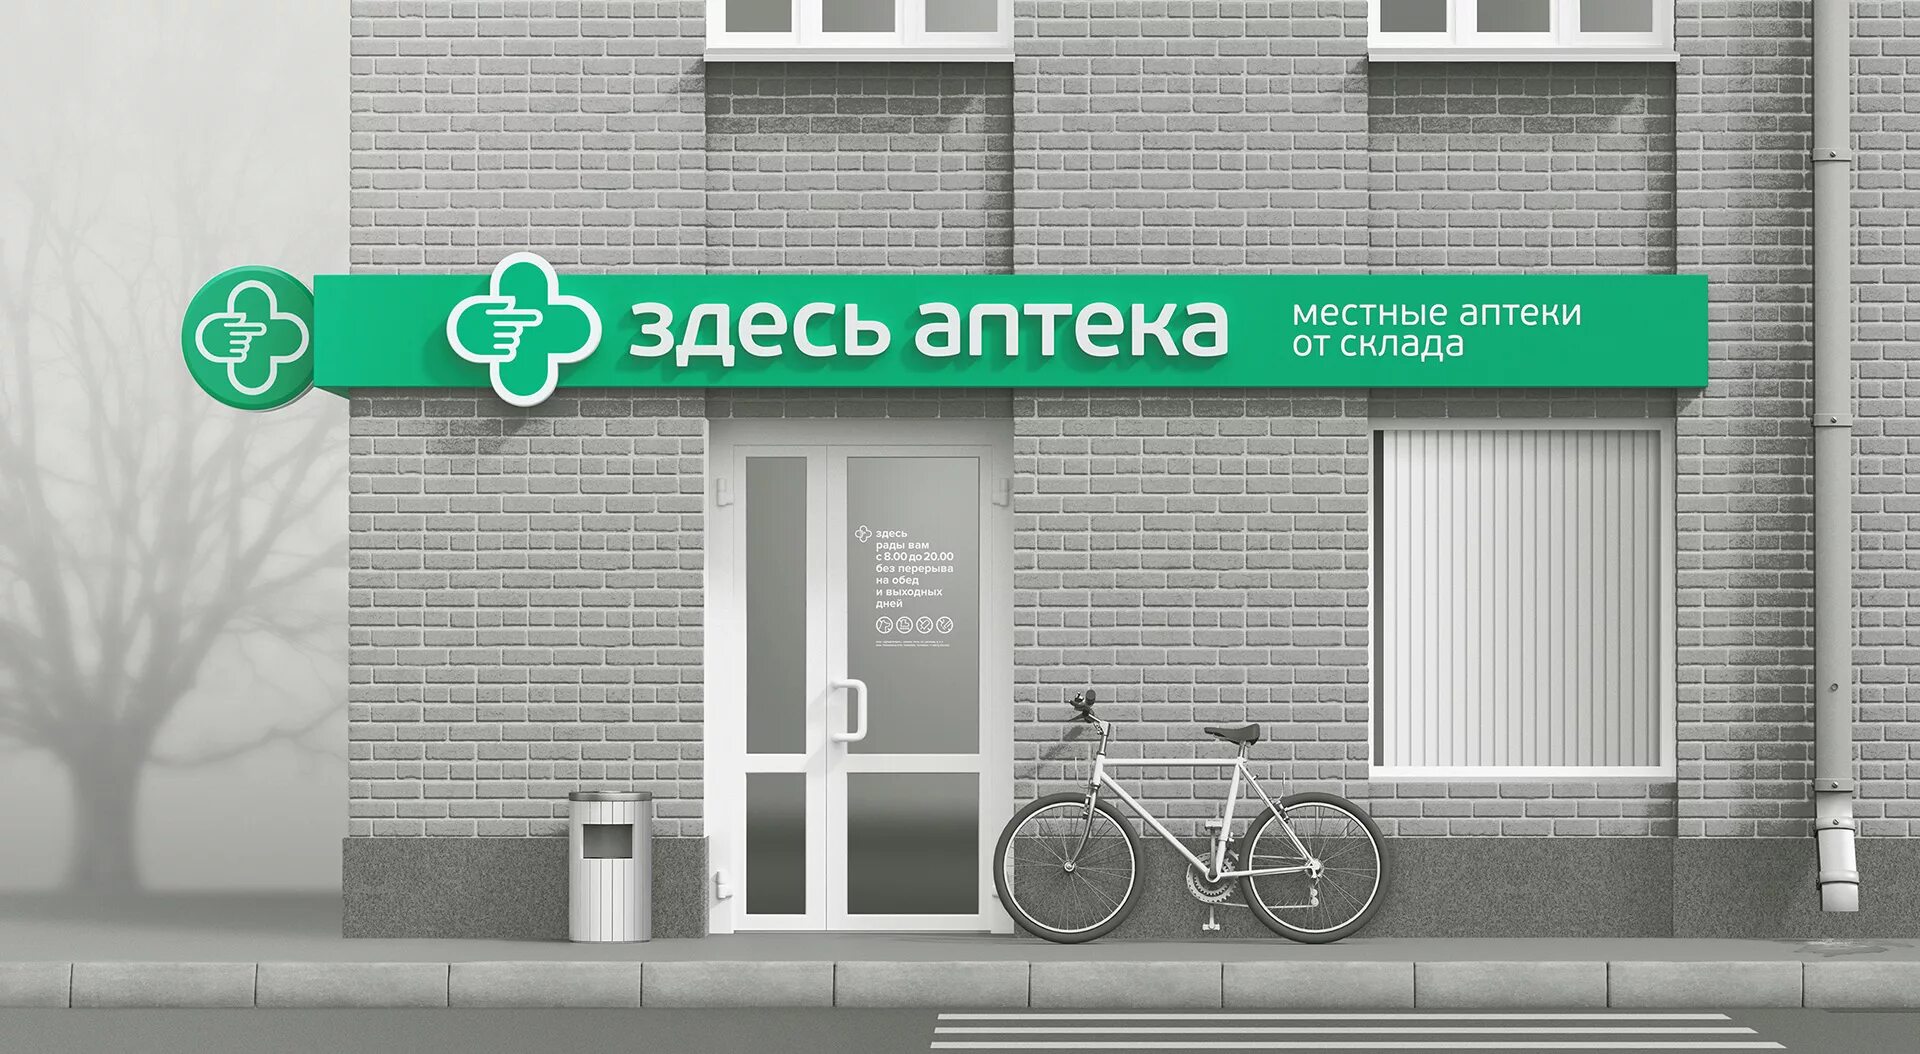 Зеленые интернет аптеки. Здесь аптека. Здесь аптека вывеска. Аптека баннер. Брендинг аптеки.